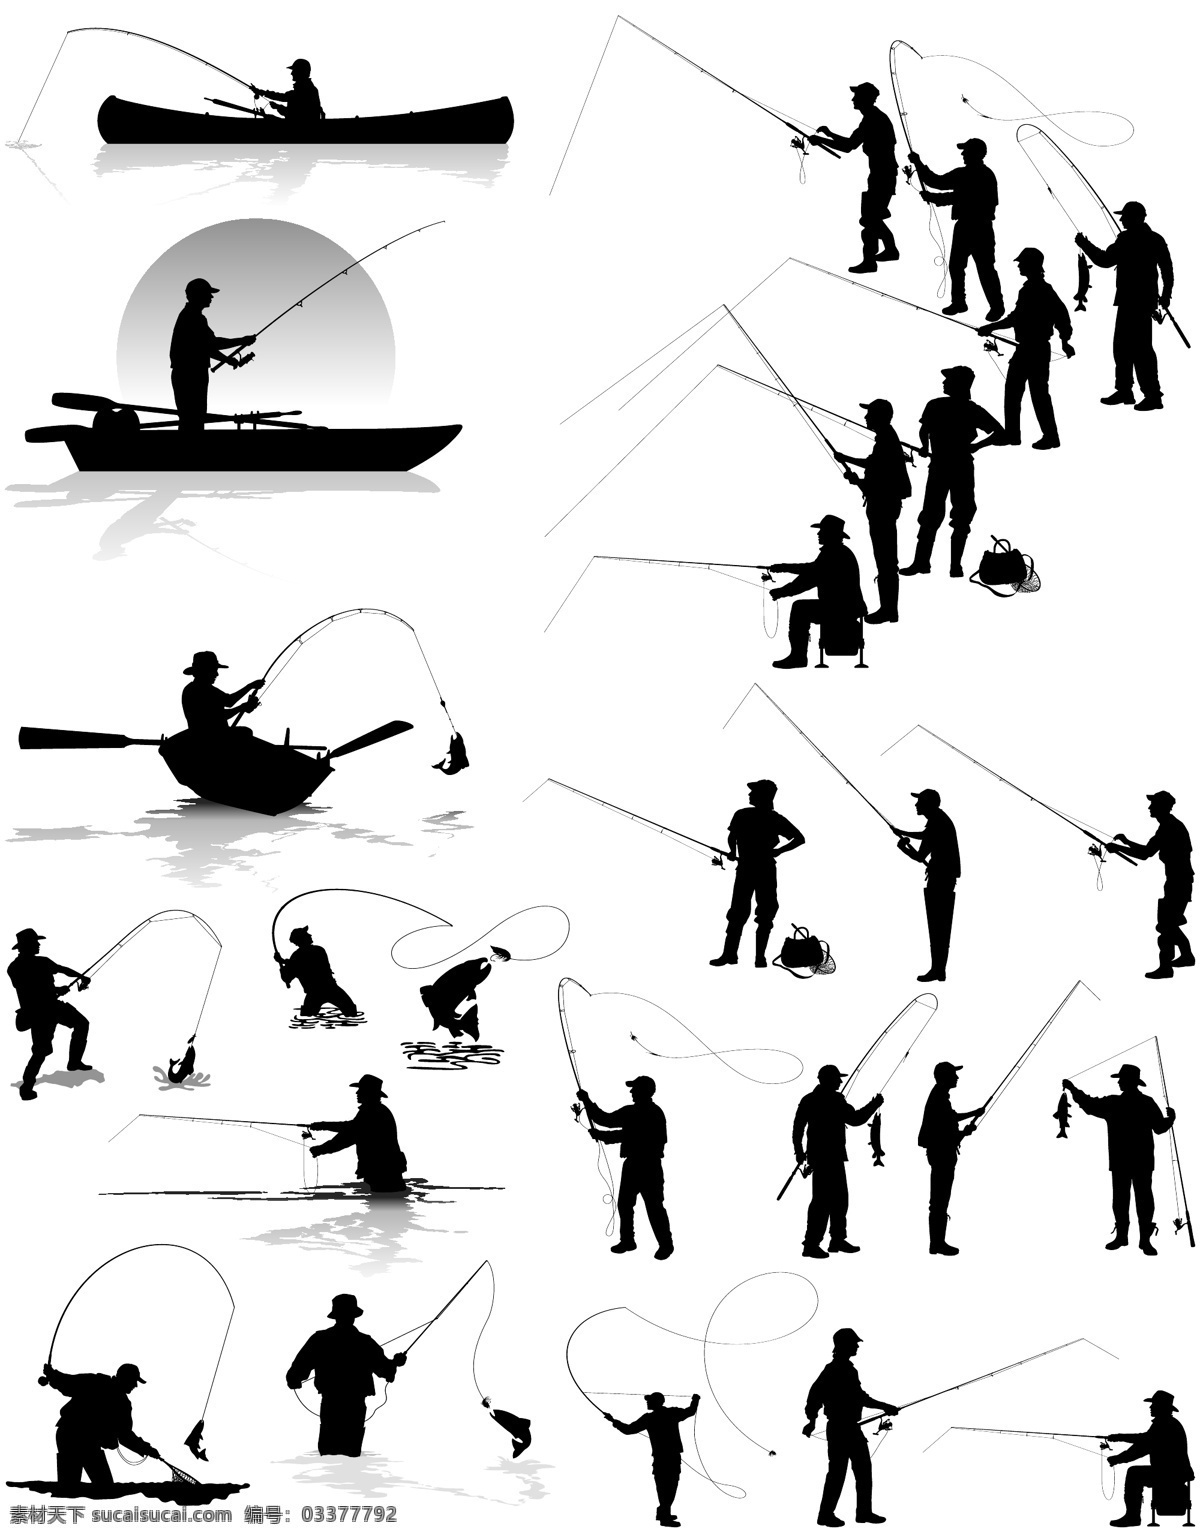 钓鱼剪影 钓鱼素材 矢量素材 设计素材 鱼杆 鱼 卡通设计素材 卡通设计